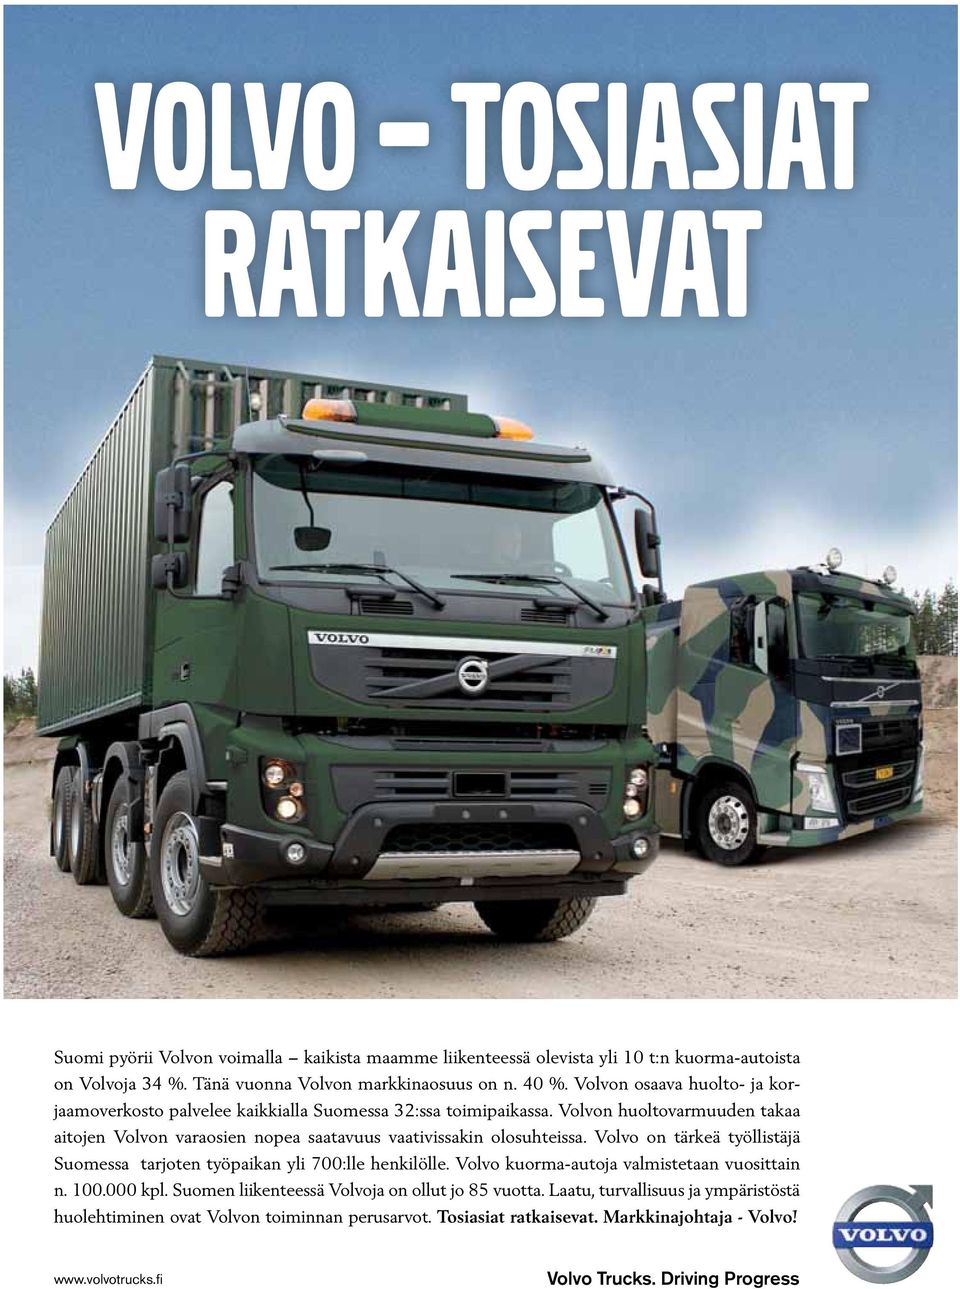 Volvon huoltovarmuuden takaa aitojen Volvon varaosien nopea saatavuus vaativissakin olosuhteissa. Volvo on tärkeä työllistäjä Suomessa tarjoten työpaikan yli 700:lle henkilölle.